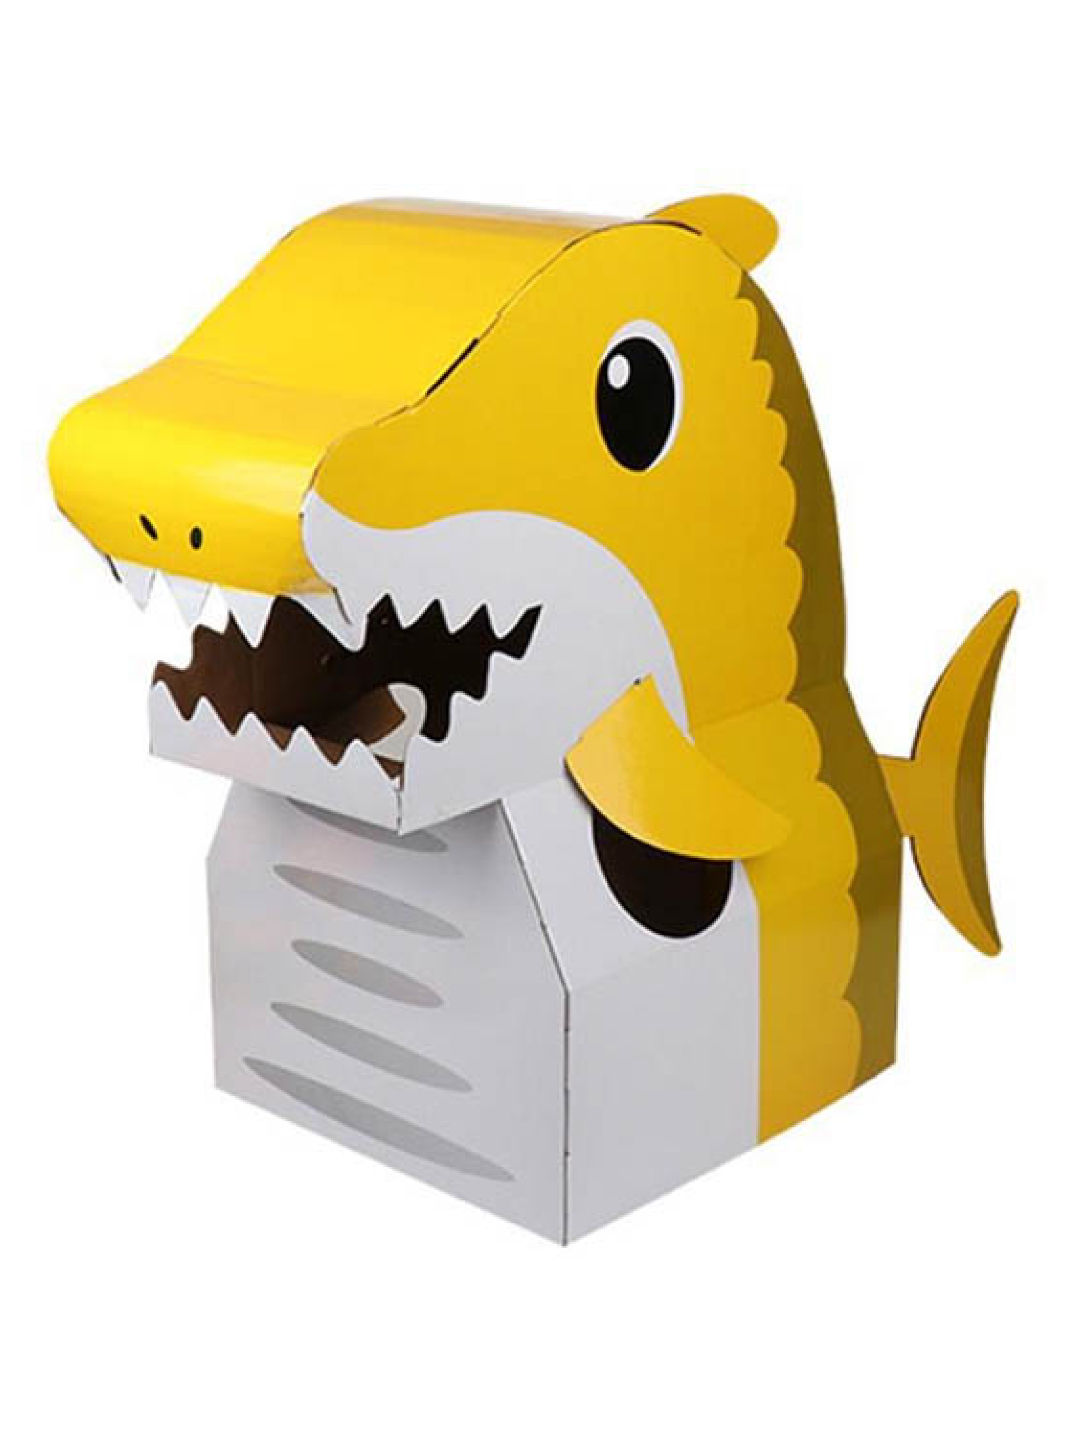 Crafty Kids Shark DIY Wearable Cardboard Costume